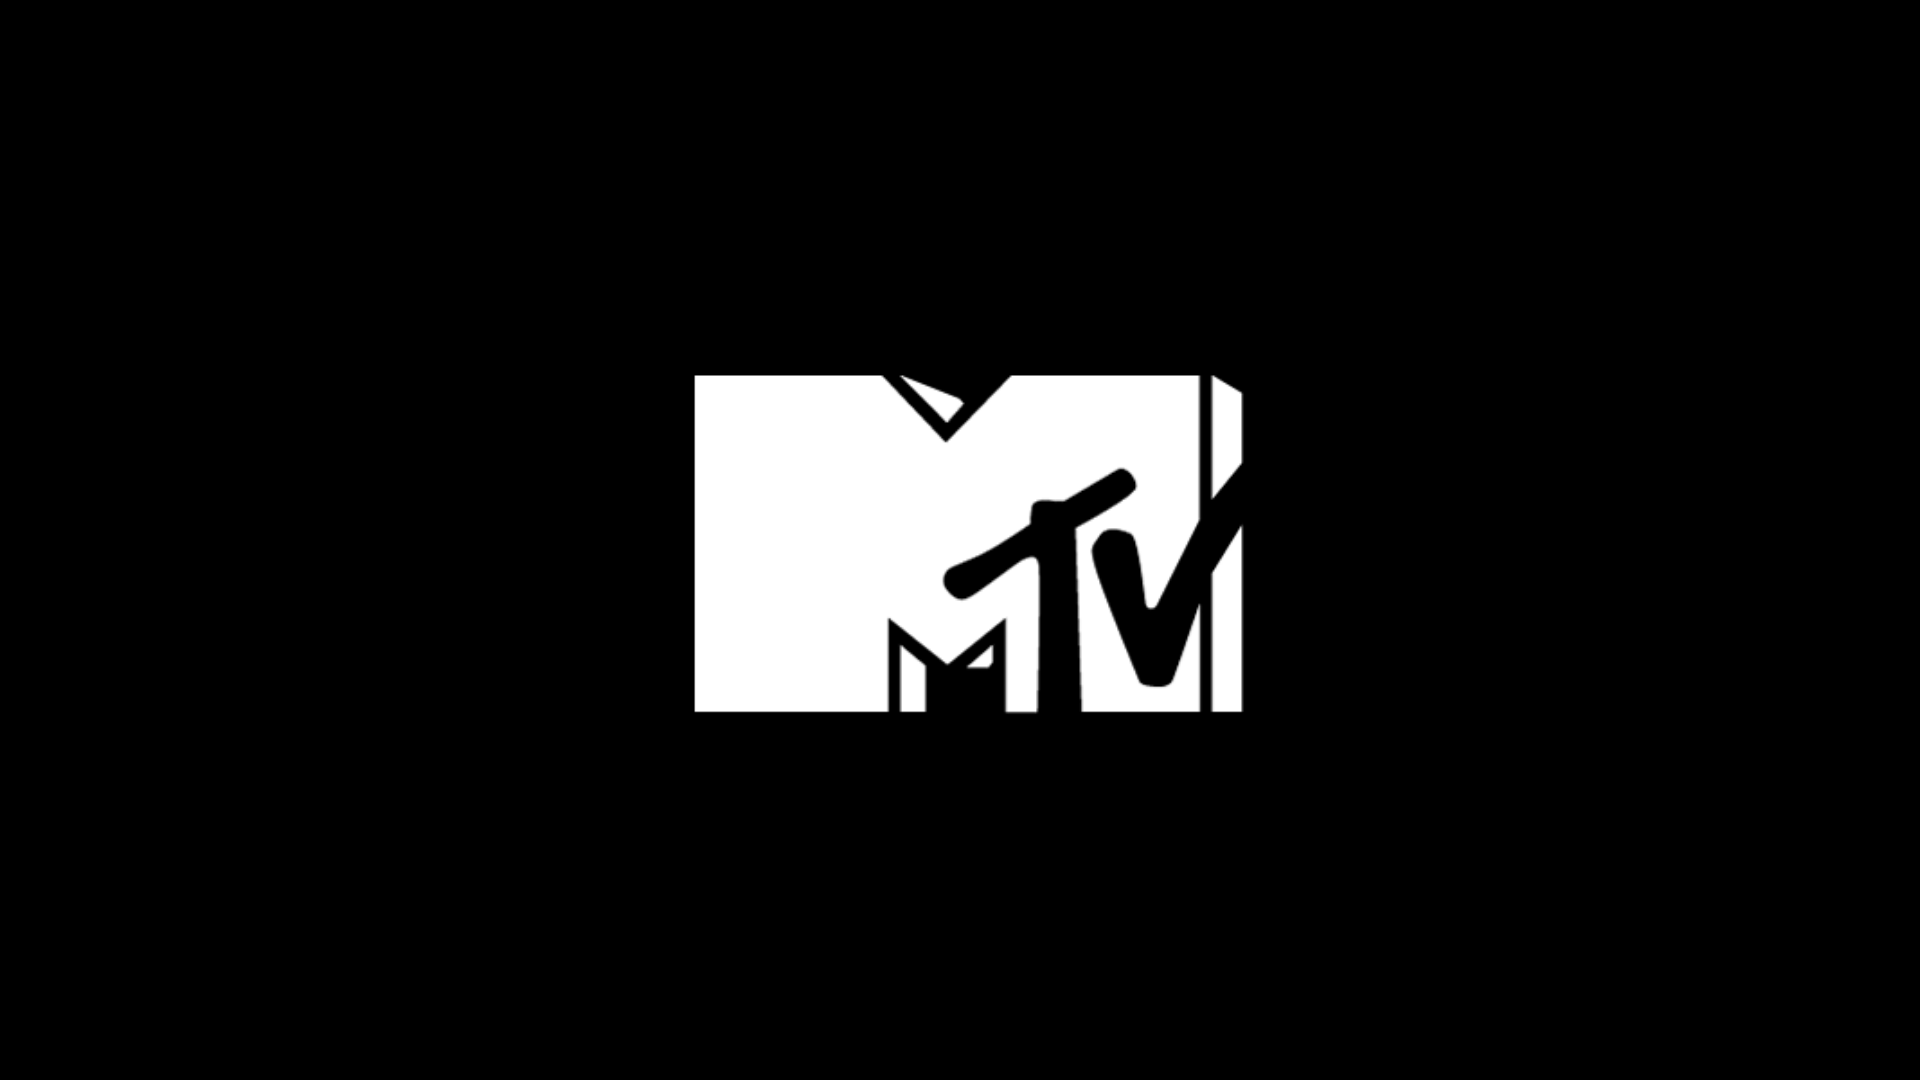 MTV Brasil ao vivo,MTV Brasil online,assistir MTV Brasil,assistir MTV Brasil ao vivo,assistir MTV Brasil online,MTV Brasil gratis,assistir MTV Brasil gratis,ao vivo online,ao vivo gratis,ver MTV Brasil,ver MTV Brasil ao vivo,ver MTV Brasil online,24 horas,24h,multicanais,piratetv,piratatvs.com